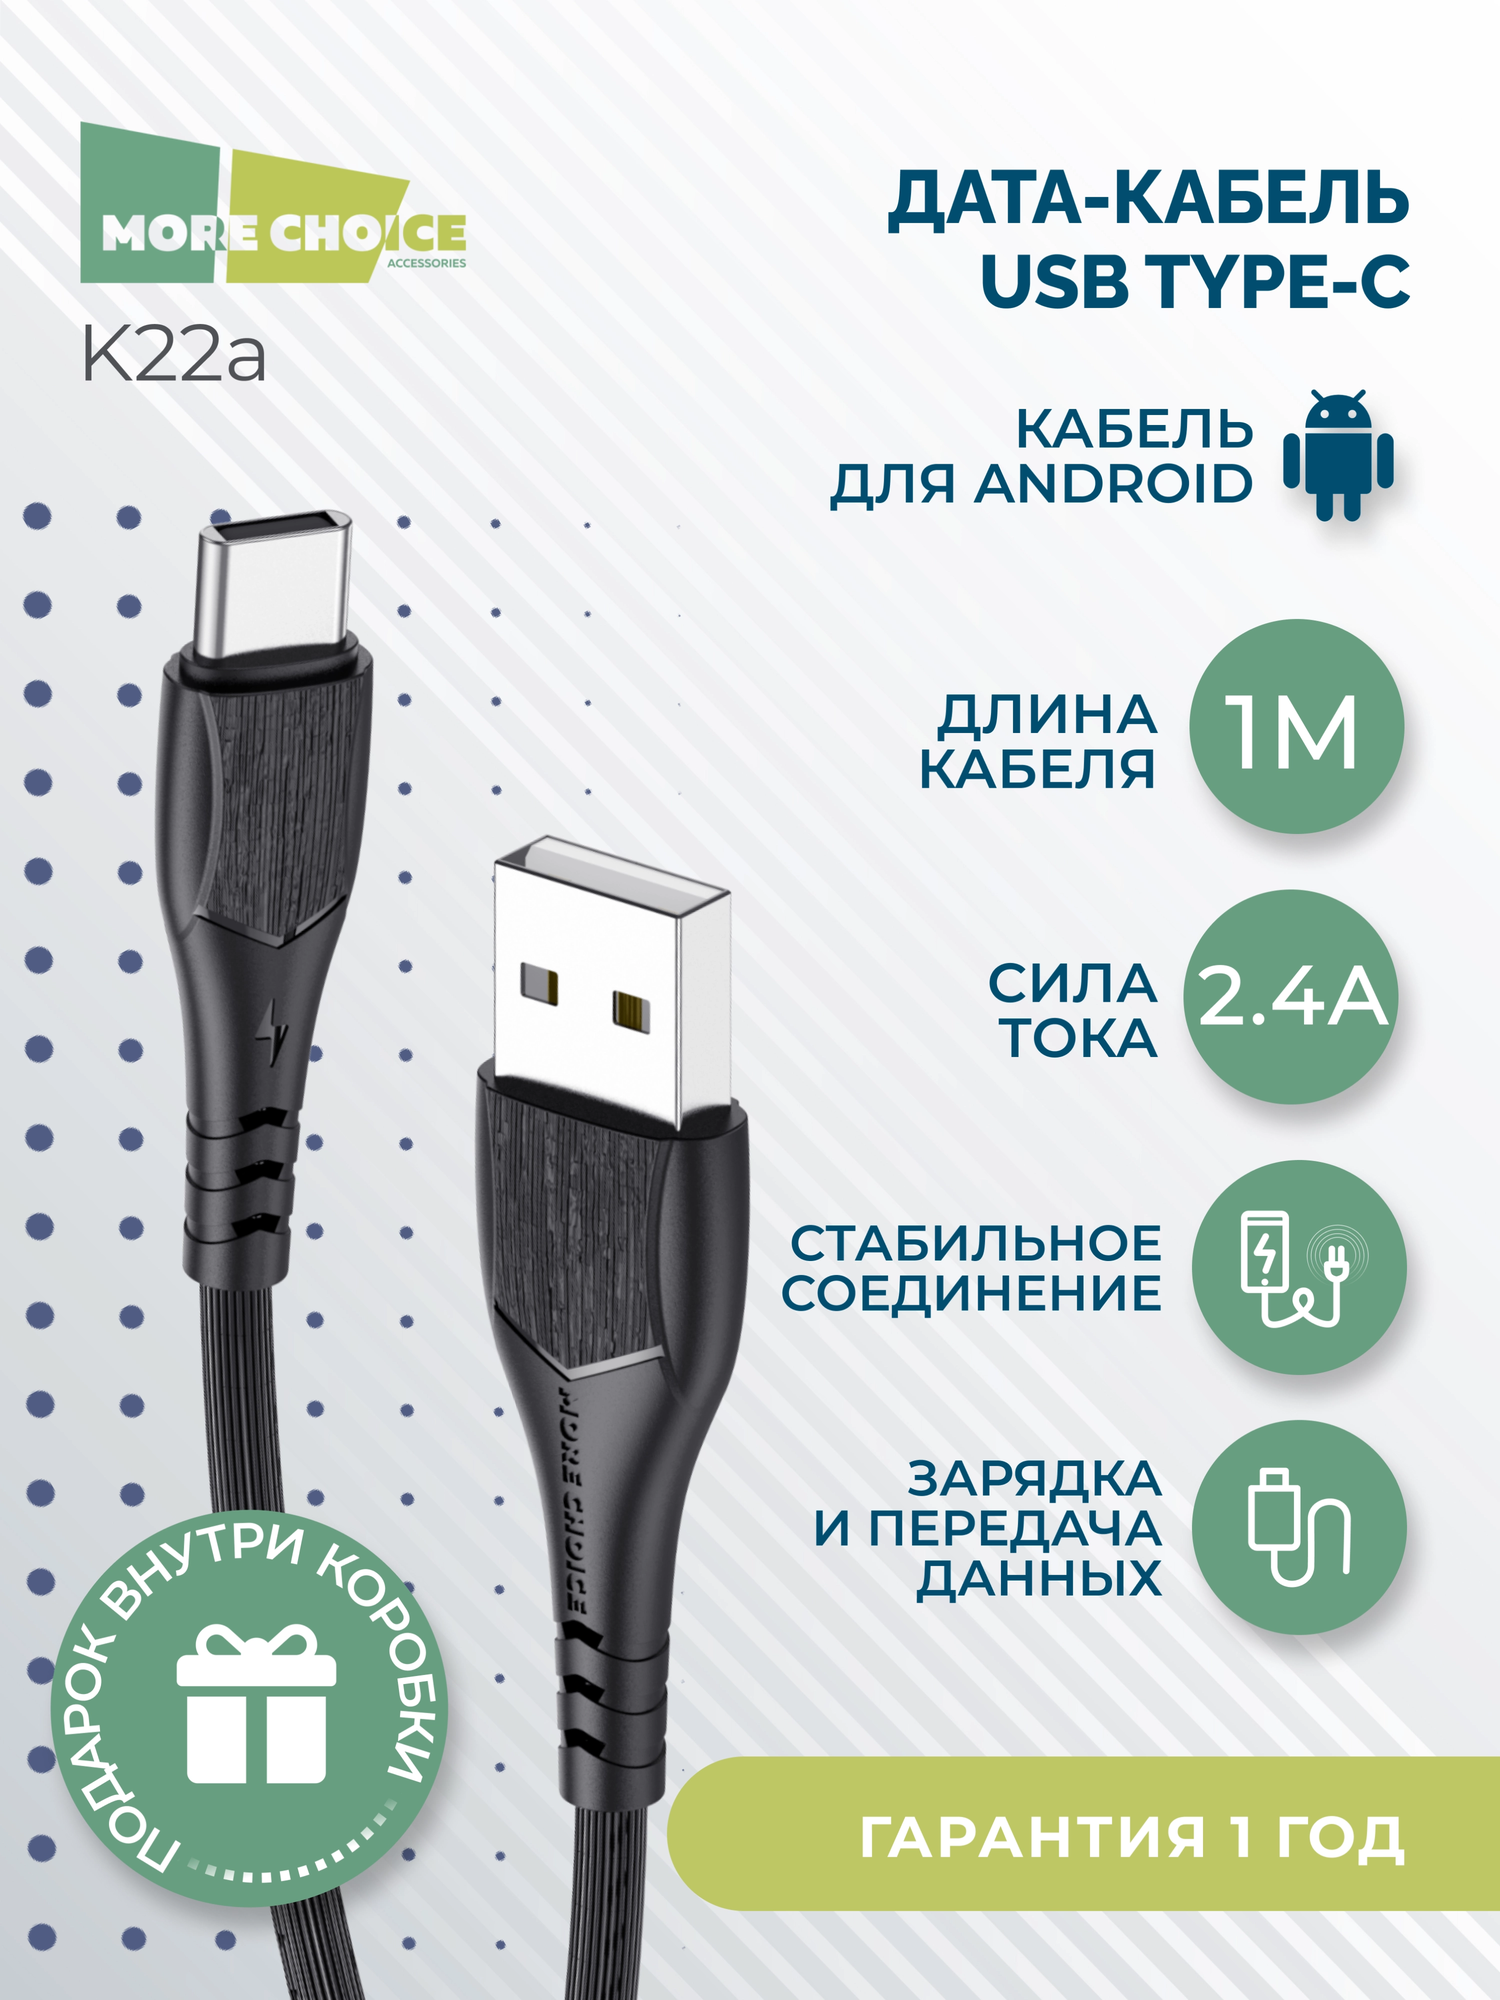 Дата-кабель USB 2.4A для Type-C More choice K22a TPE 1м Black